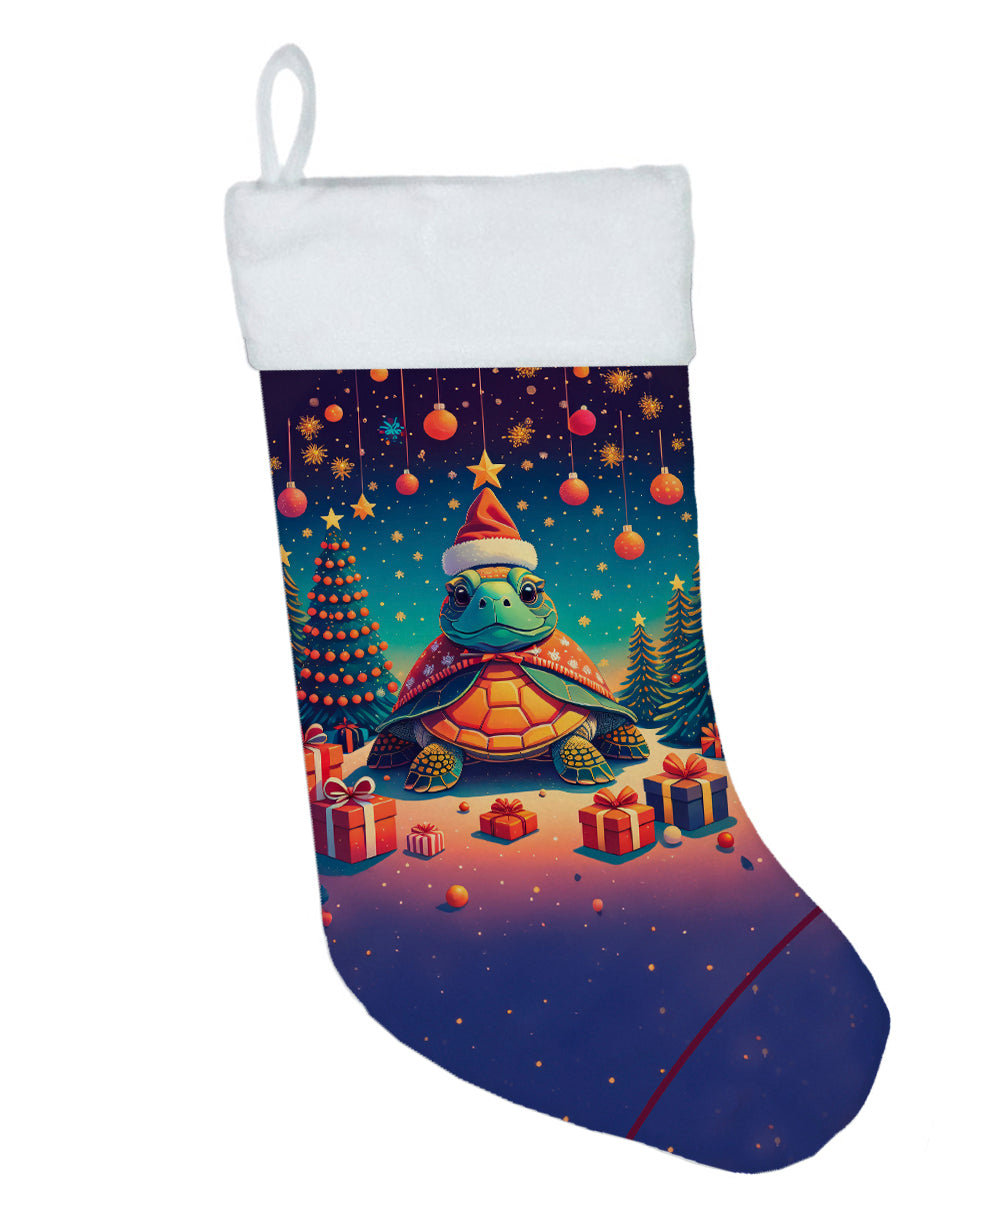 Buy this Turtle Christmas Christmas Stocking